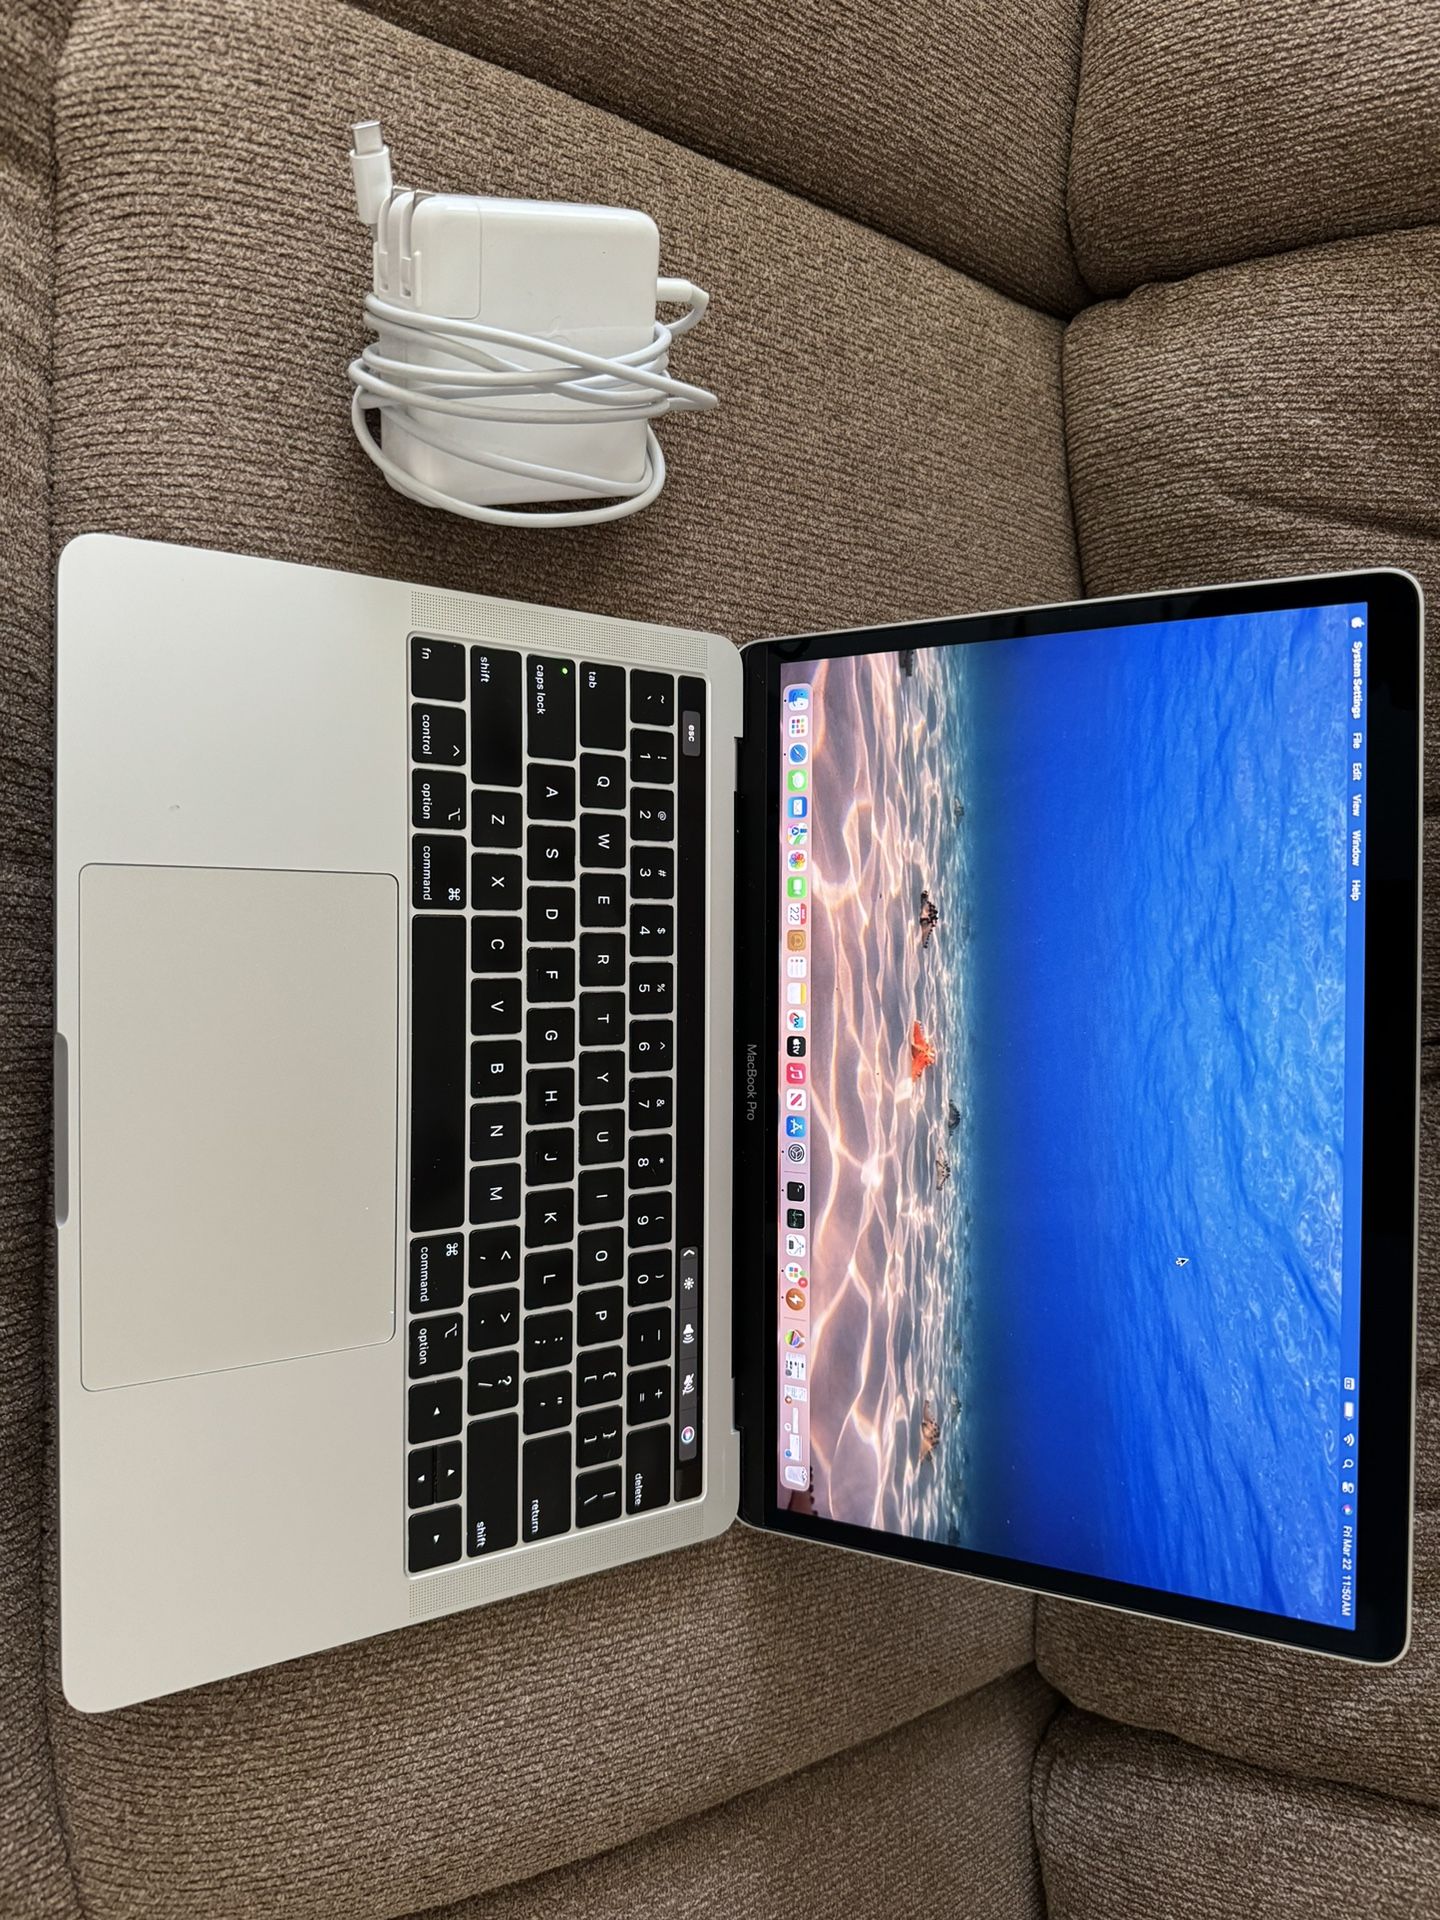 2019/2020 MacBook Pro 13”retina,i7 Quad Core 2.8ghz. 16gb Ram. 512gb SSD, Touch bar/ID,Fast